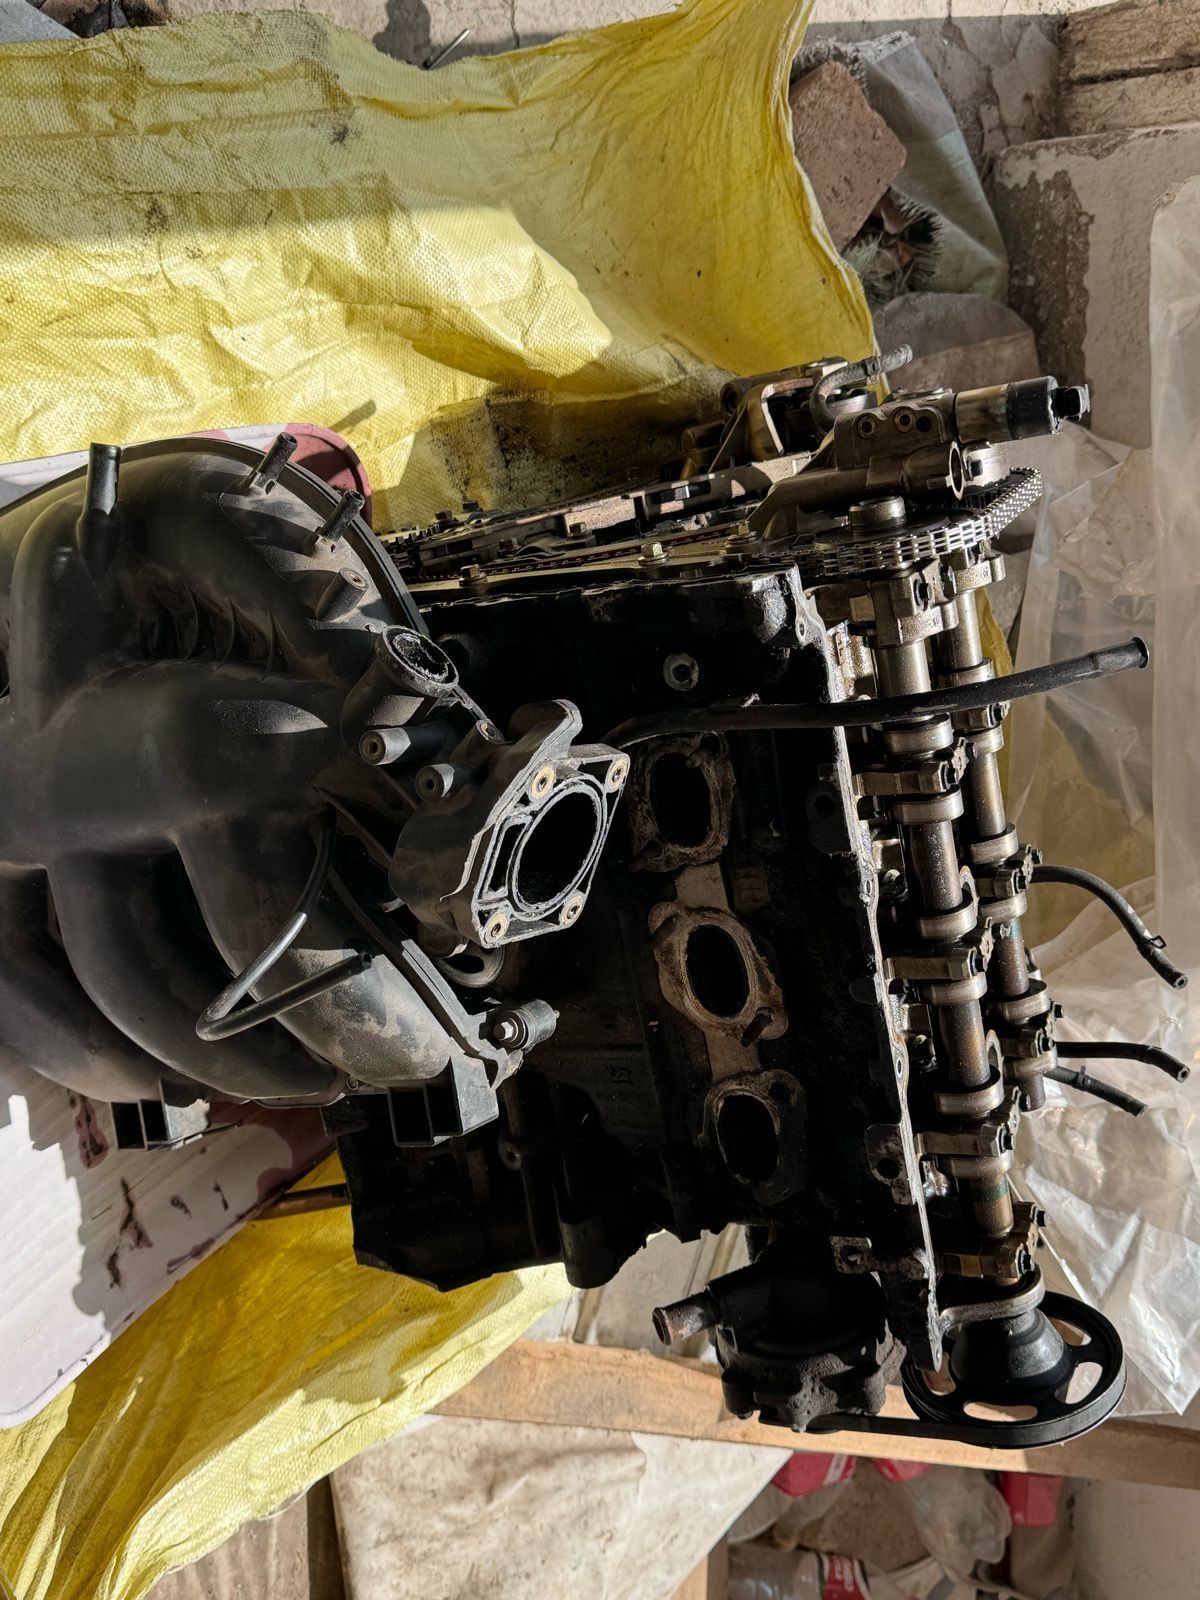 Двигатель AJ Mazda 6 (3.0L)
Продается Двигатель AJ Mazda 6 (3.0L), сос